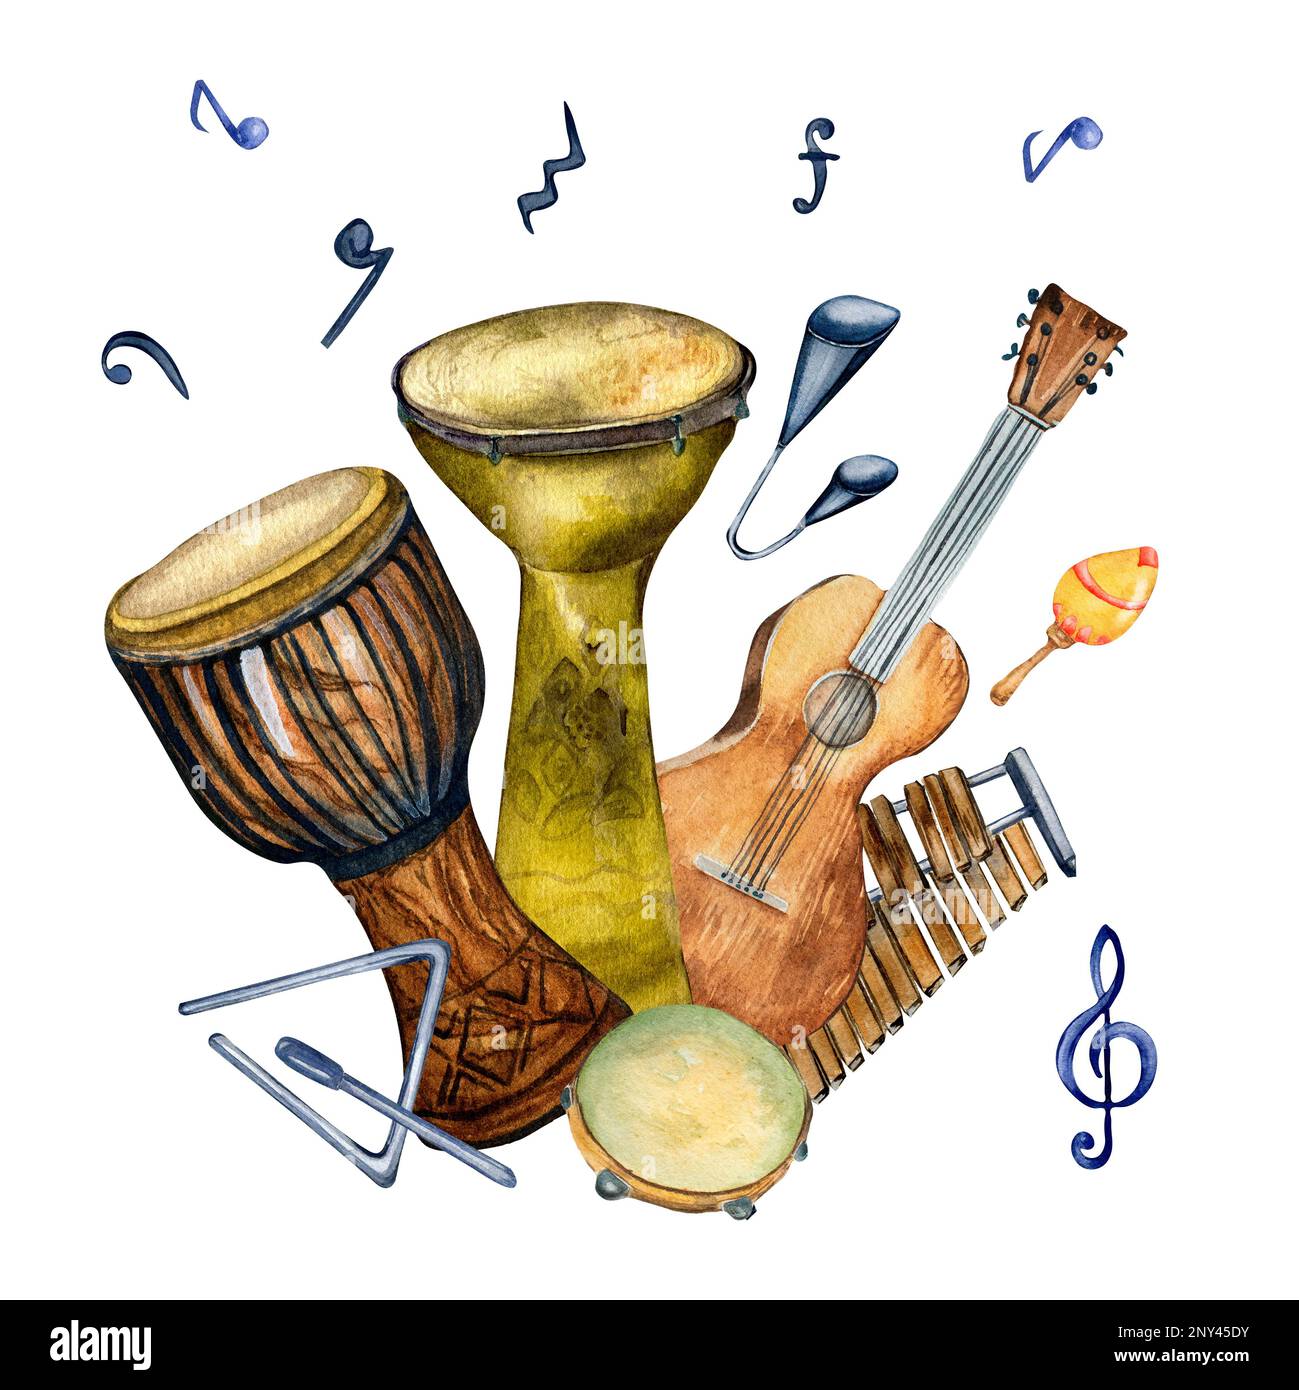 Composition des instruments de musique à percussion de variouse aquarelle illustration isolée. Guitare, congo, tambour, xylophone, agogo dessiné à la main. Design elem Banque D'Images